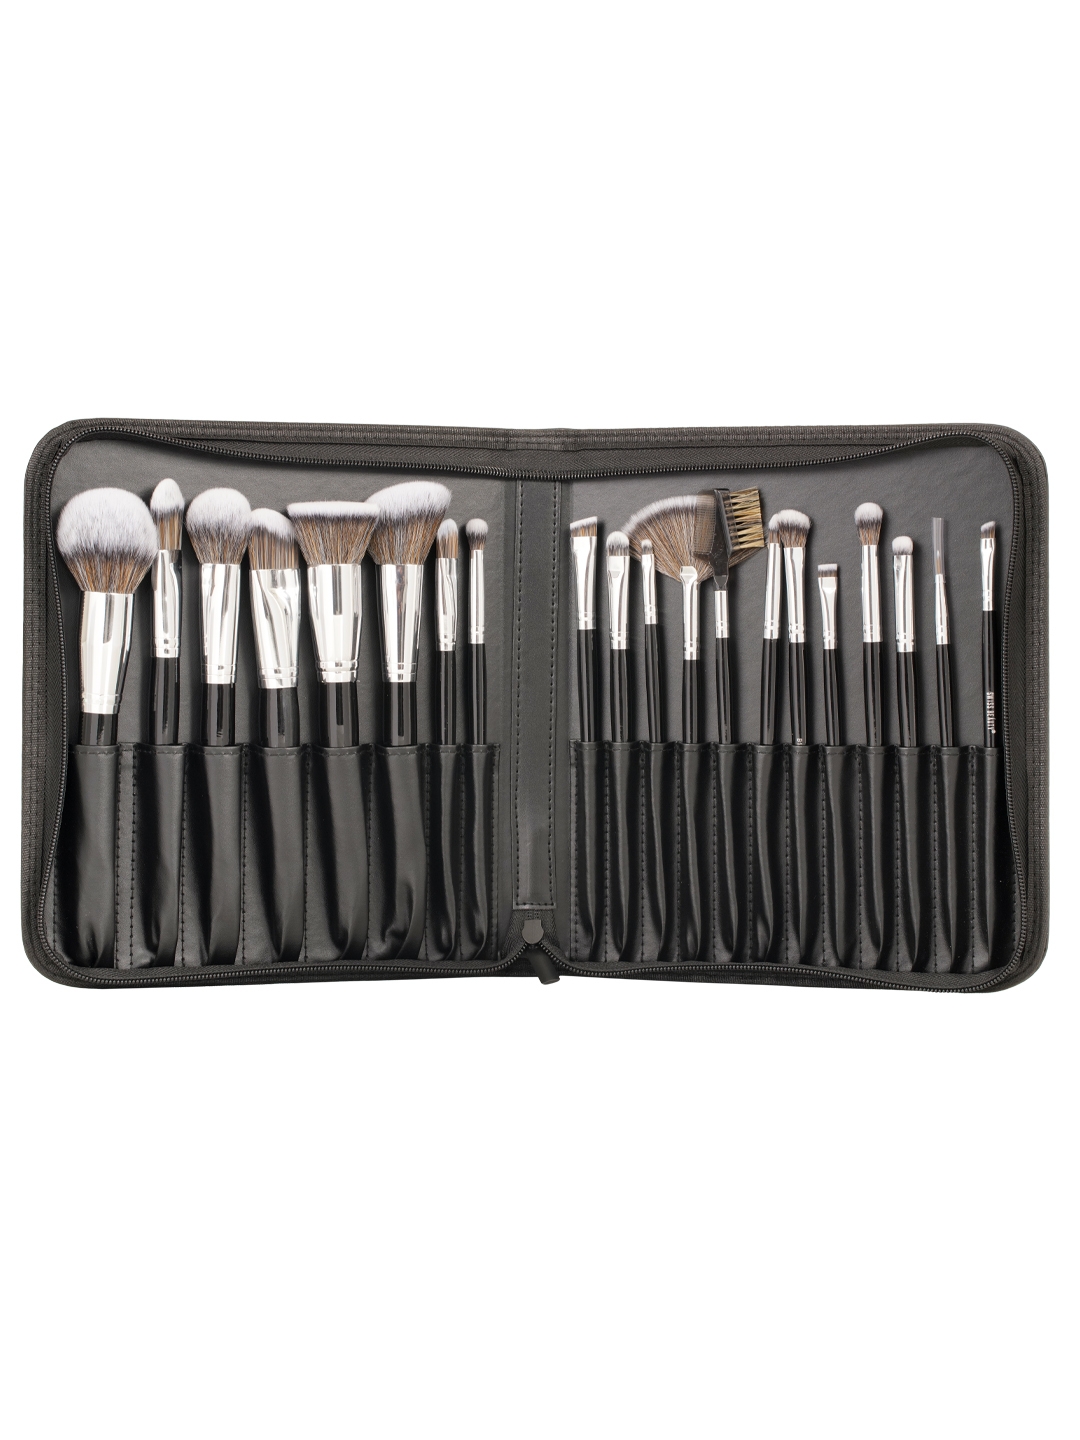 Swiss Beauty | Swiss Beauty Professional Makeup Brush Set - Black, Silver (20 Pcs)